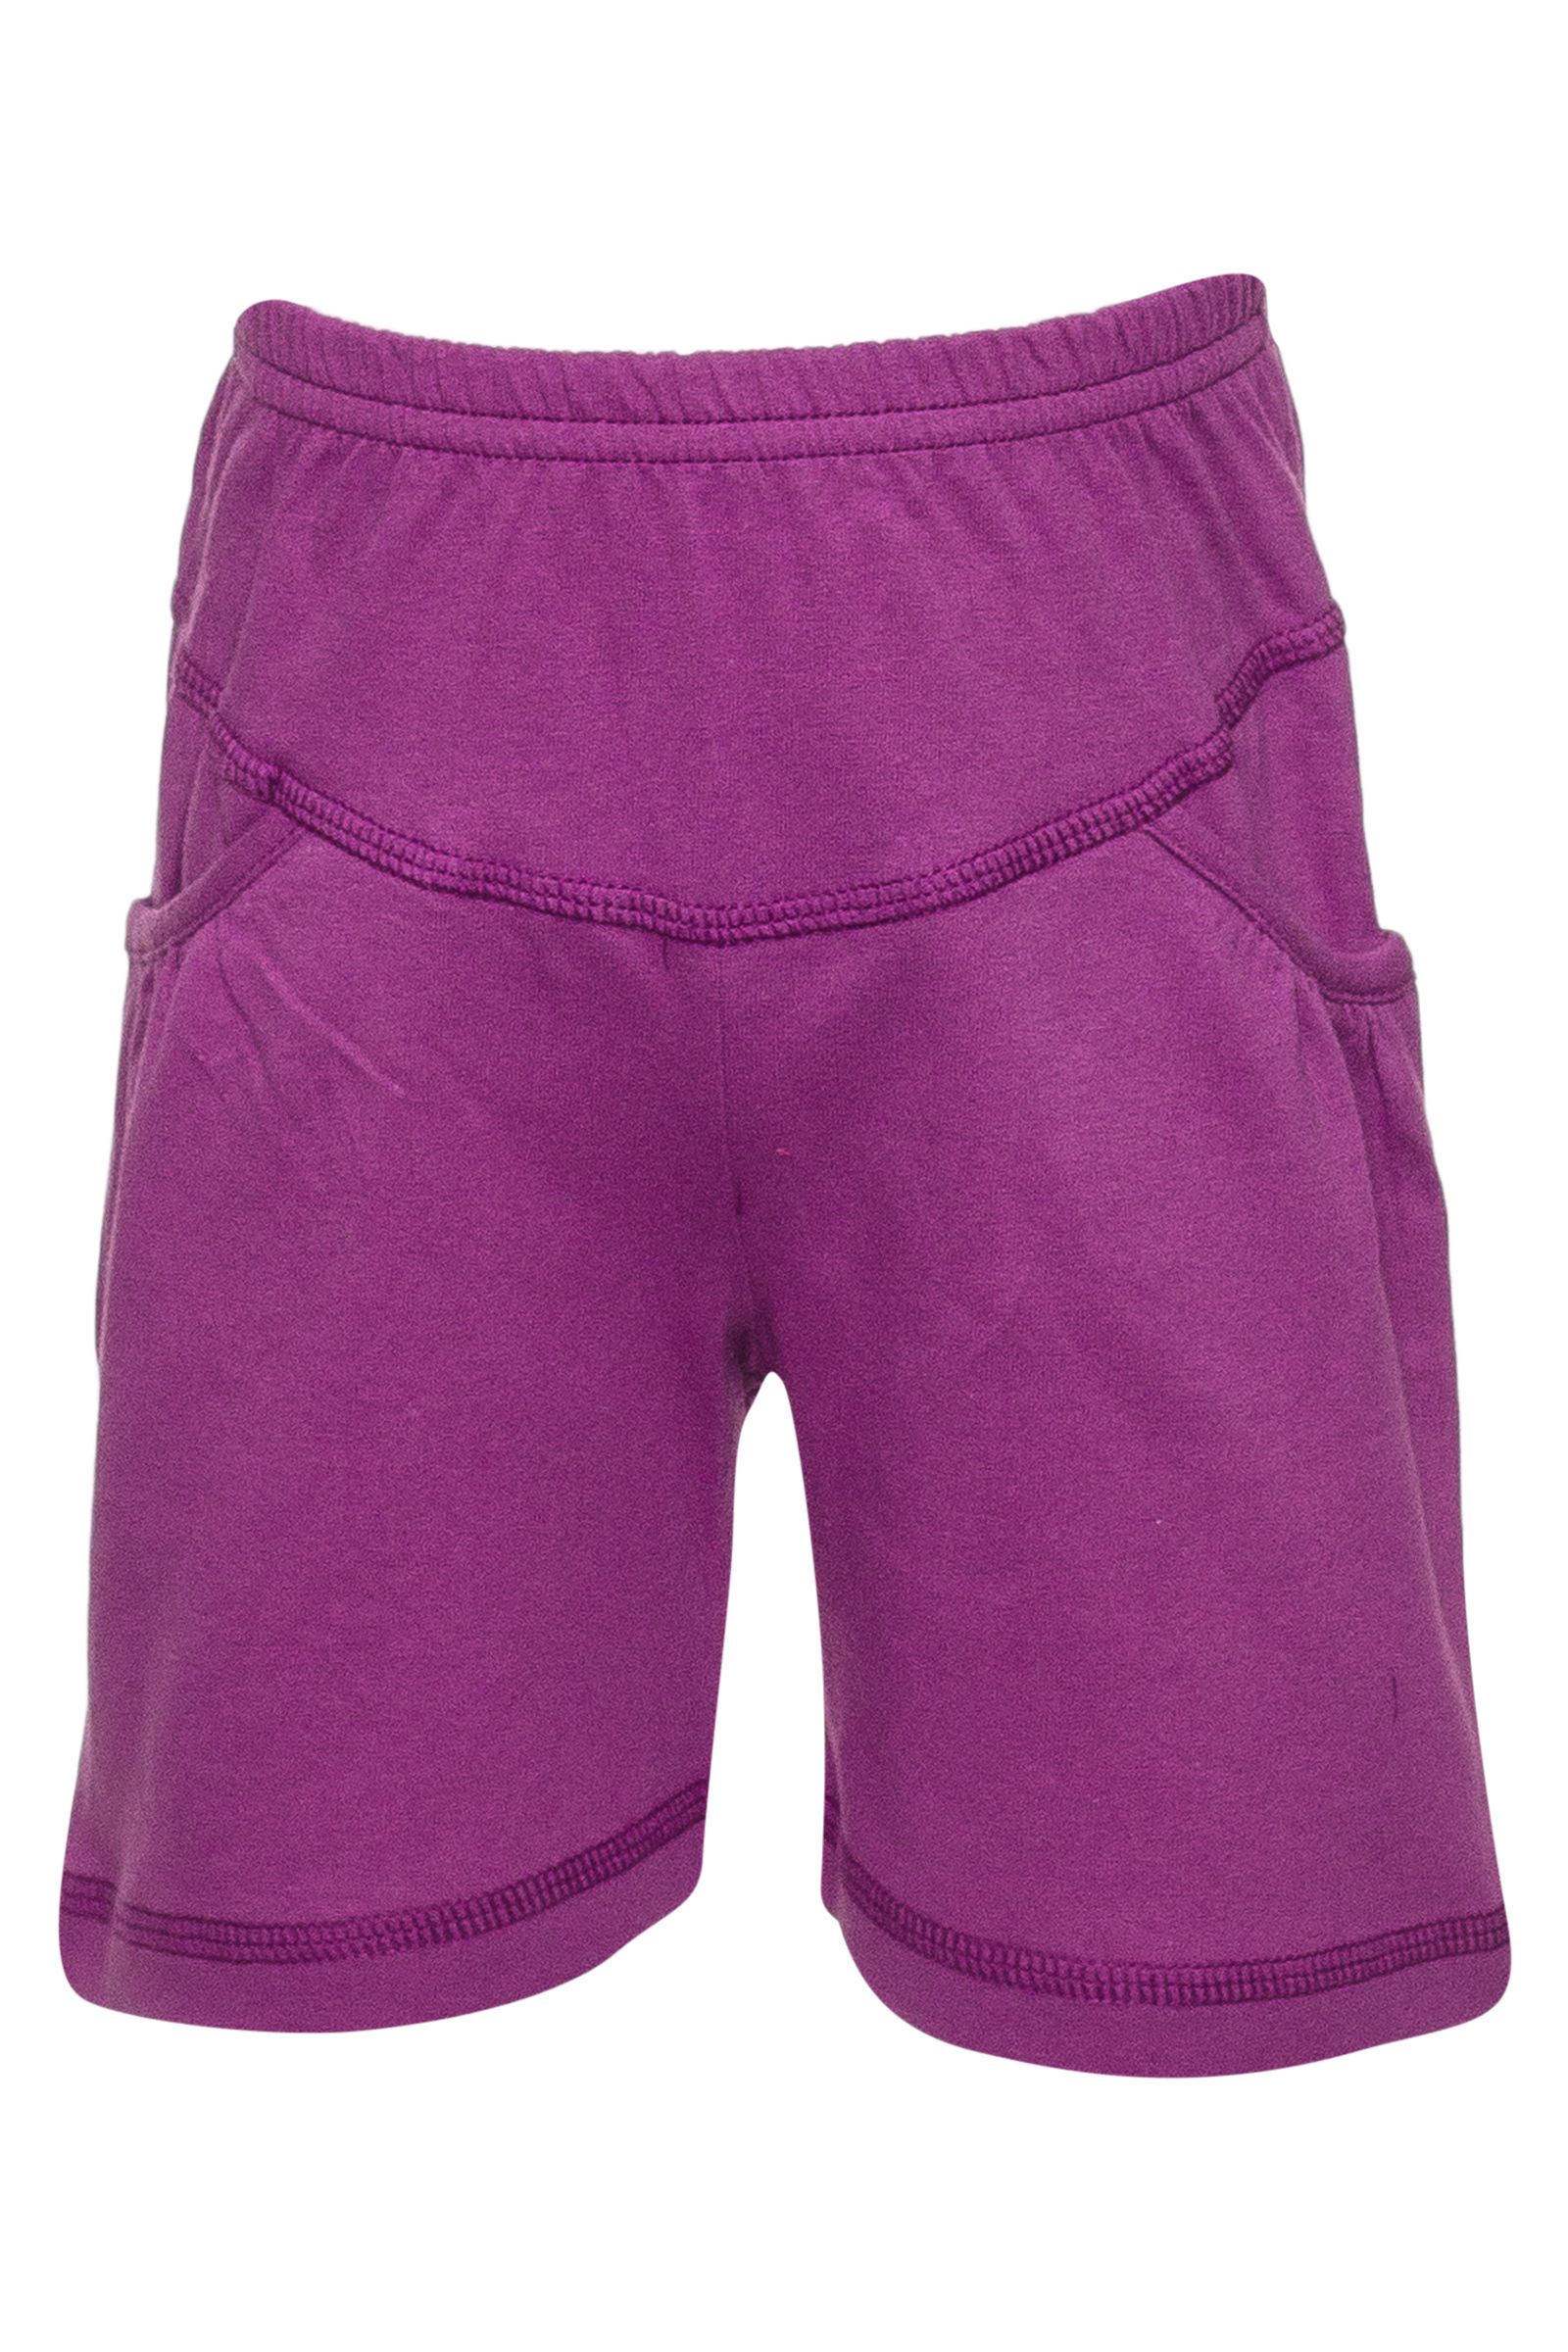 Шорты-ШР02-1154 оптом от производителя детской одежды 'Алёна'